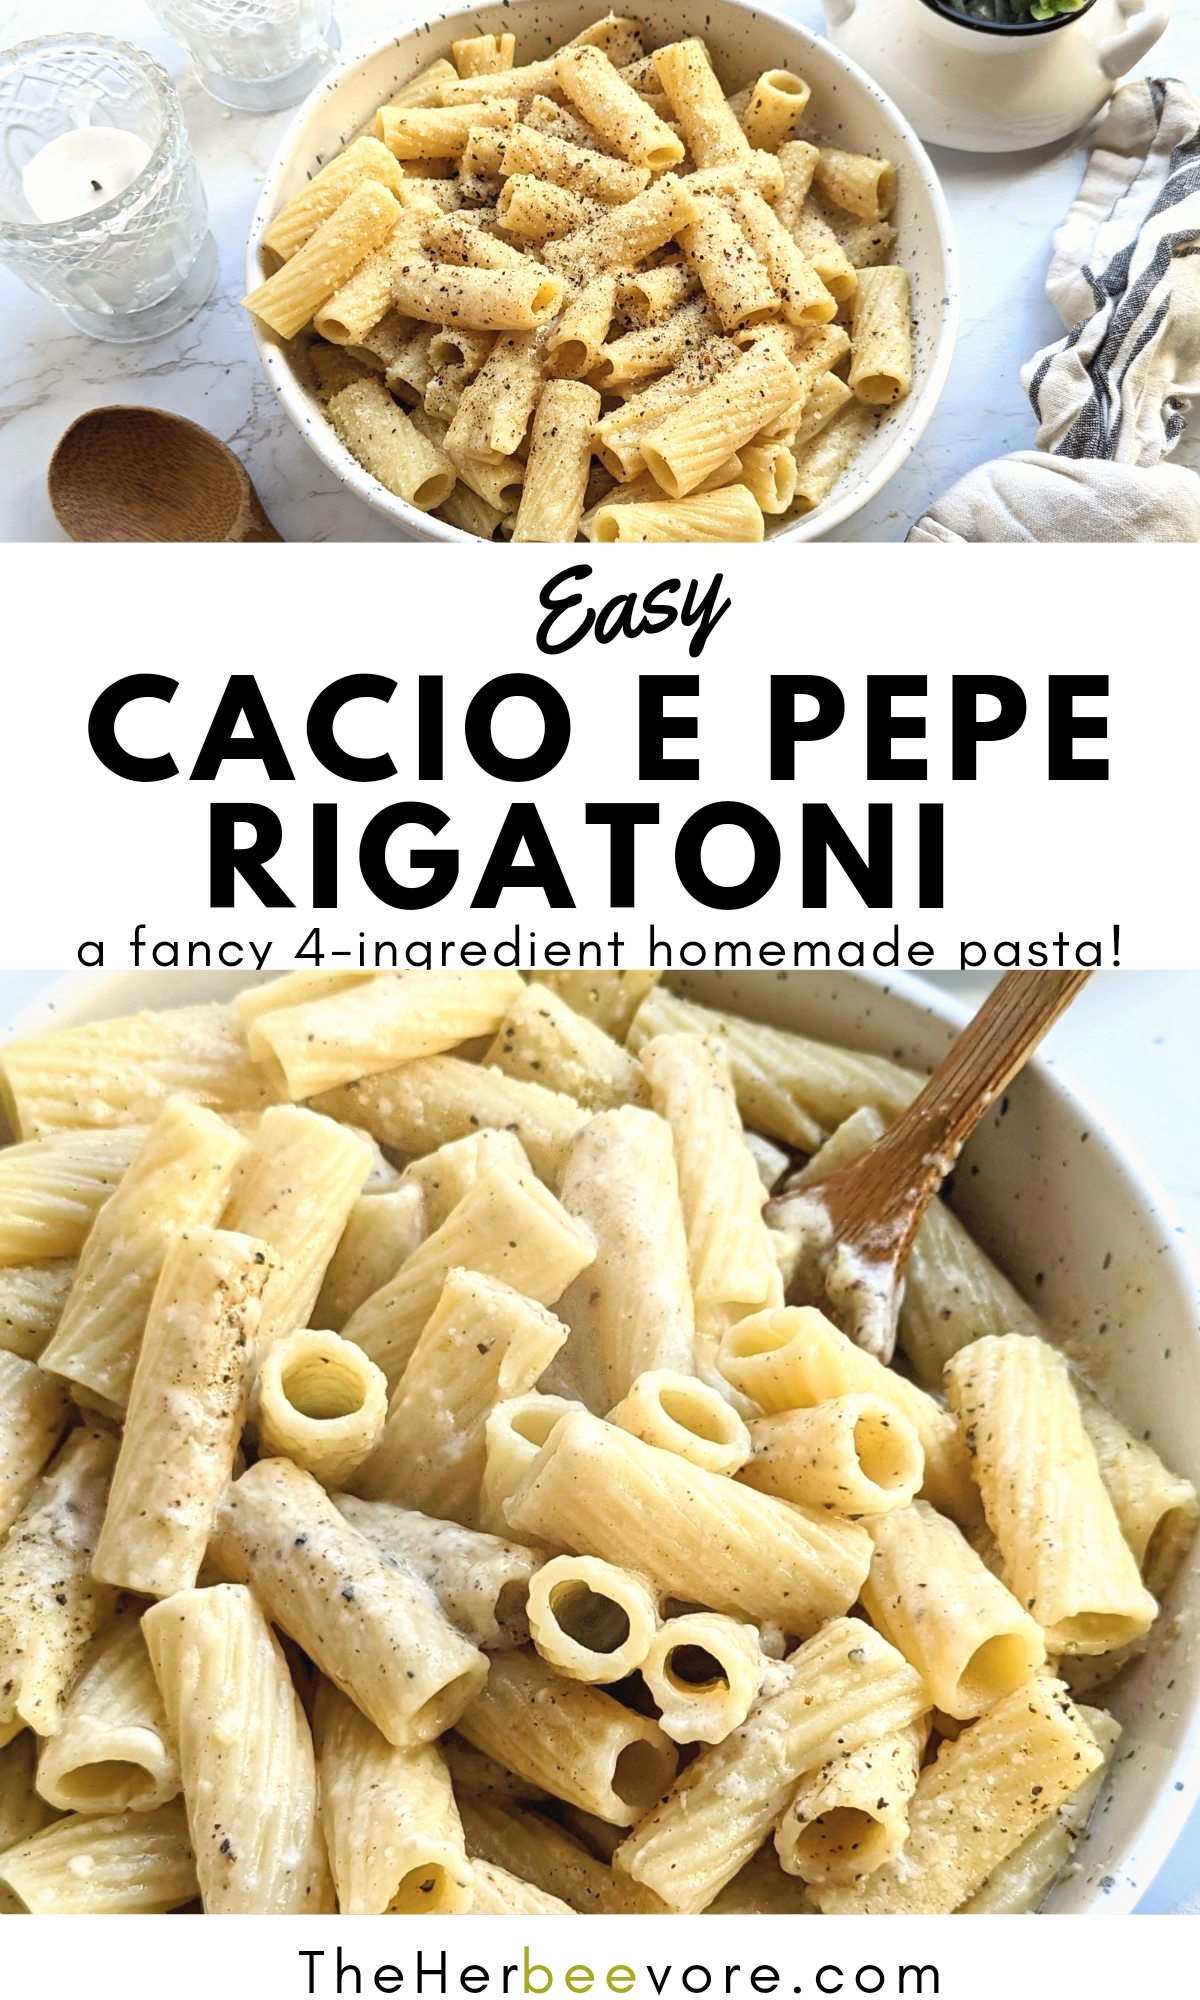 cacio e pepe rigatoni recipe vegetarian cheese rigatoni with butter and black pepper pasta thick noodles